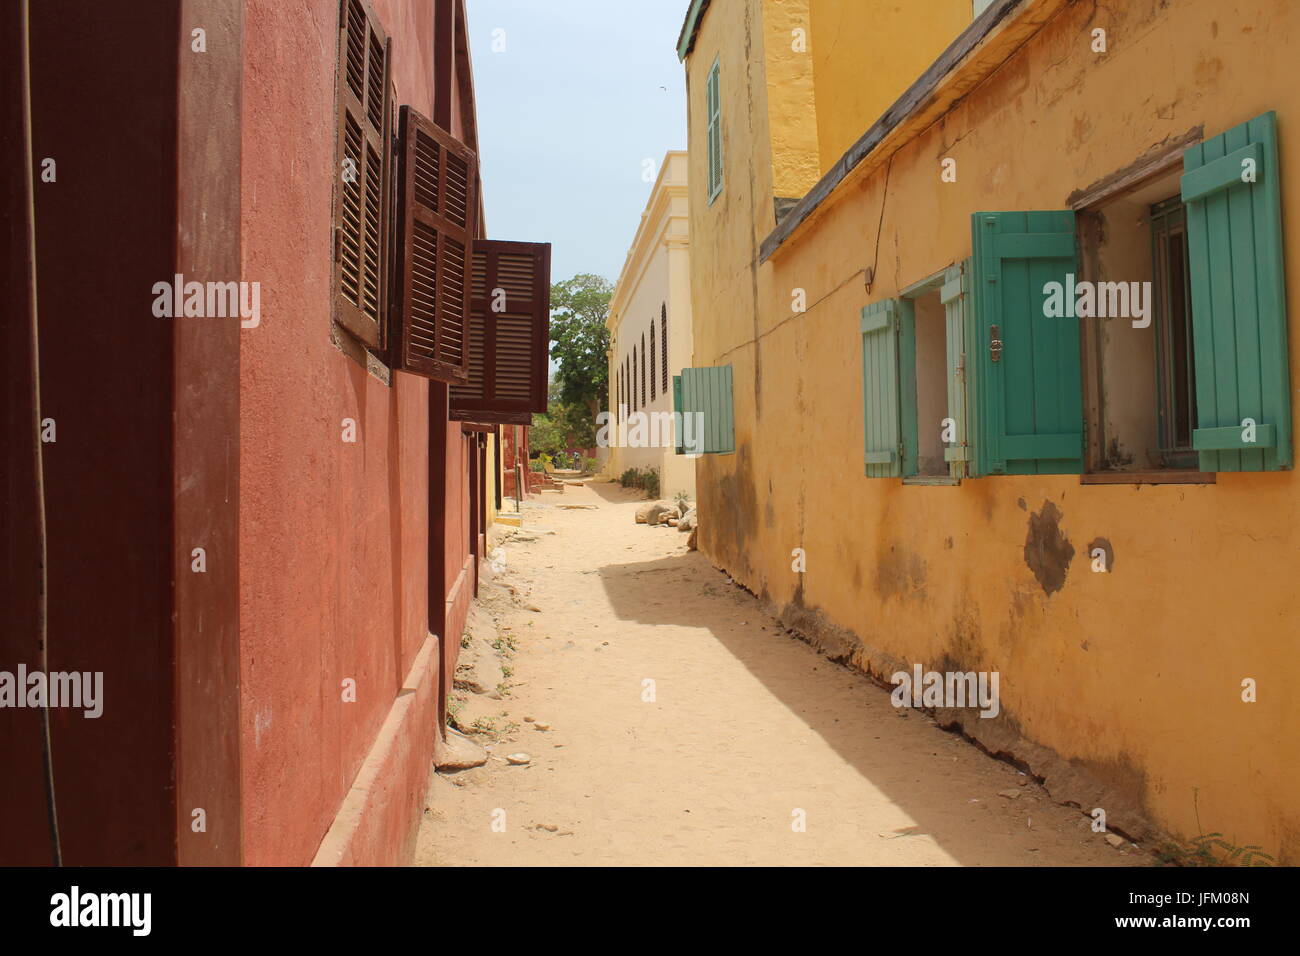 Route de sable tranquille aux maisons colorées et des détails sur l'île de Gorée hors capitale sénégalaise Dakar, l'Afrique Banque D'Images